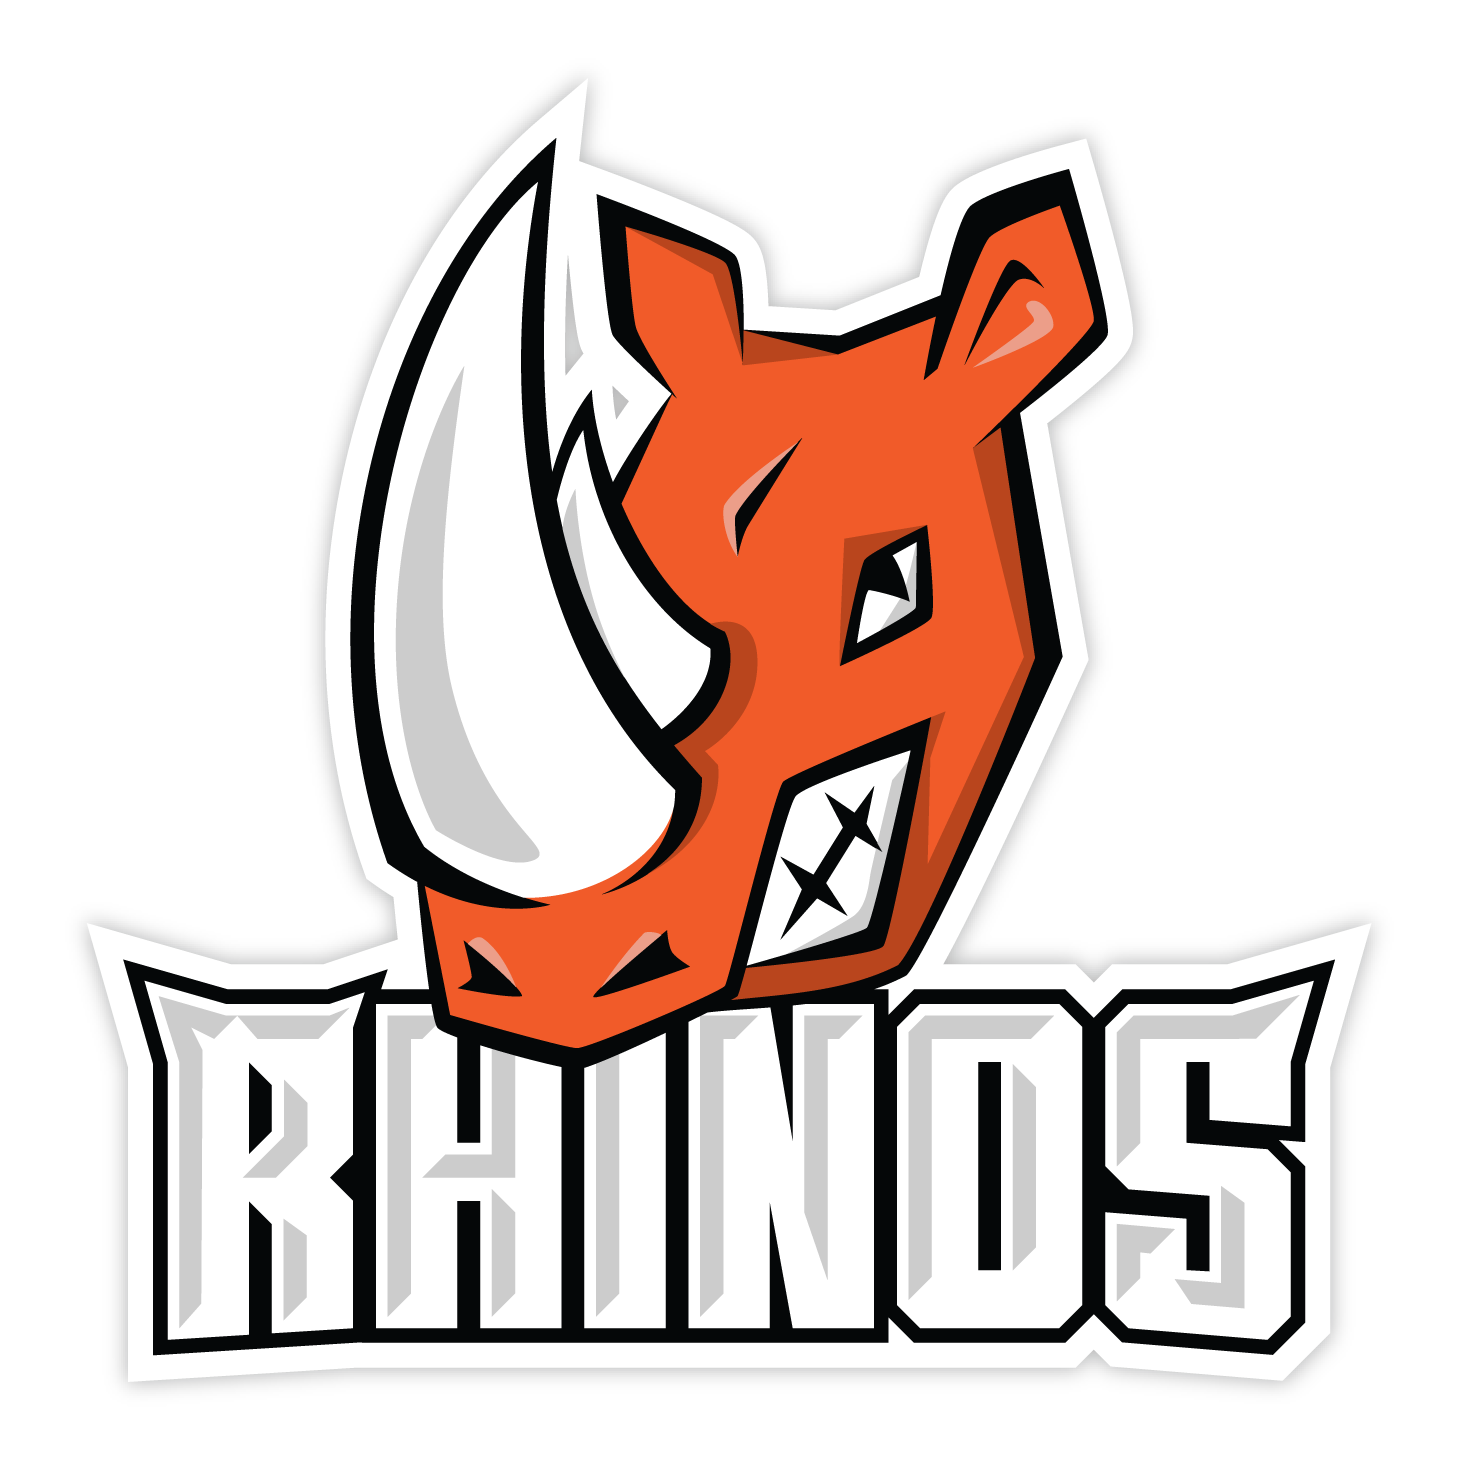 Rhinos Praha